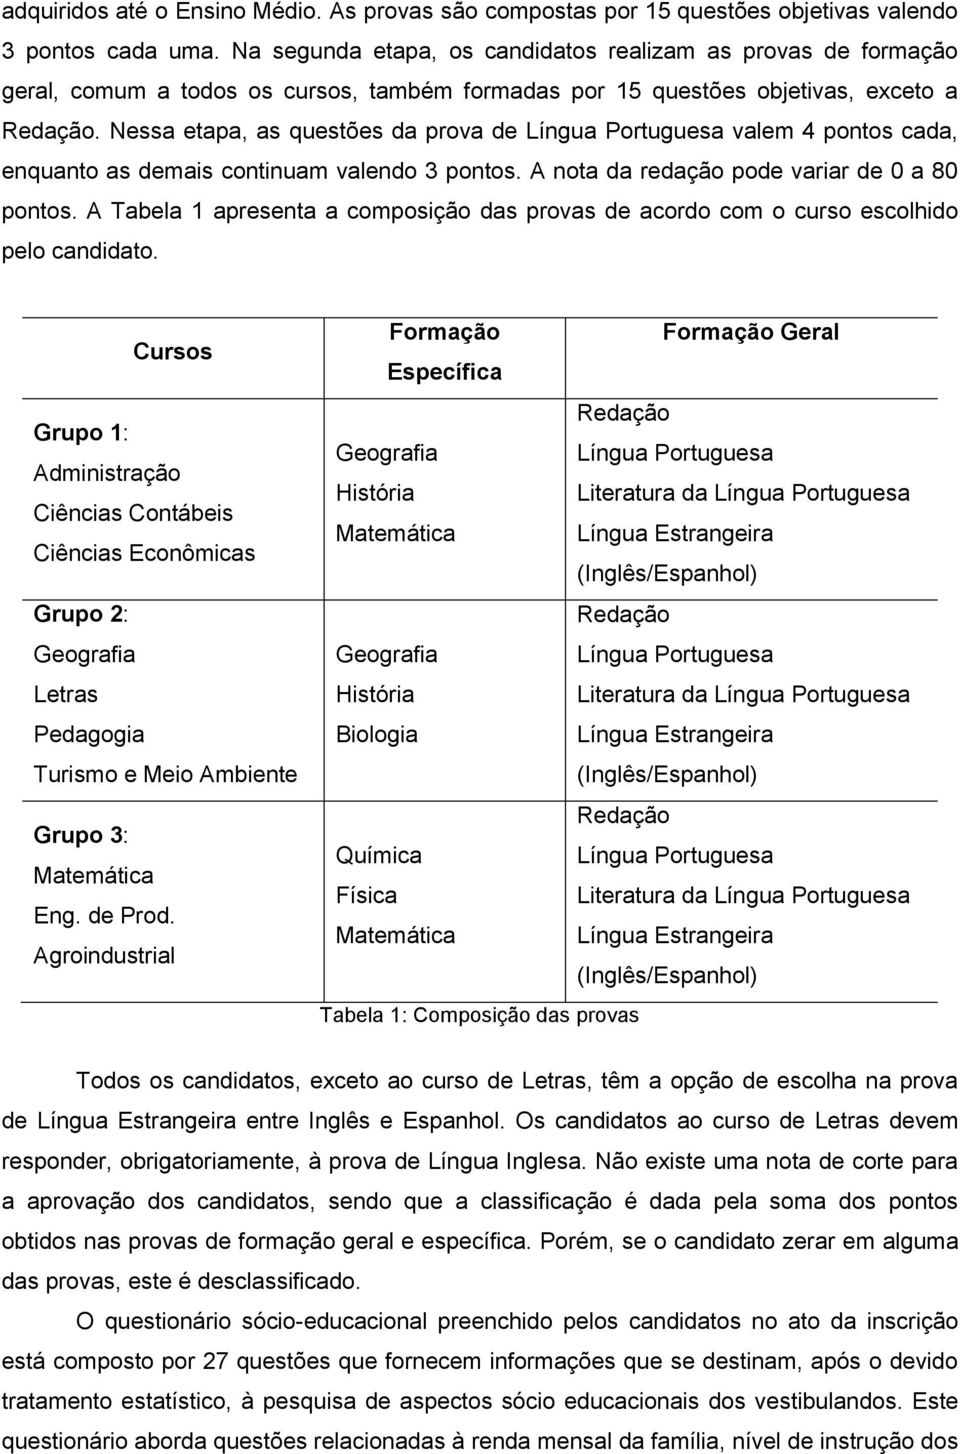 Nessa etapa, as questões da prova de Língua Portuguesa valem 4 pontos cada, enquanto as demais continuam valendo 3 pontos. A nota da redação pode variar de 0 a 80 pontos.